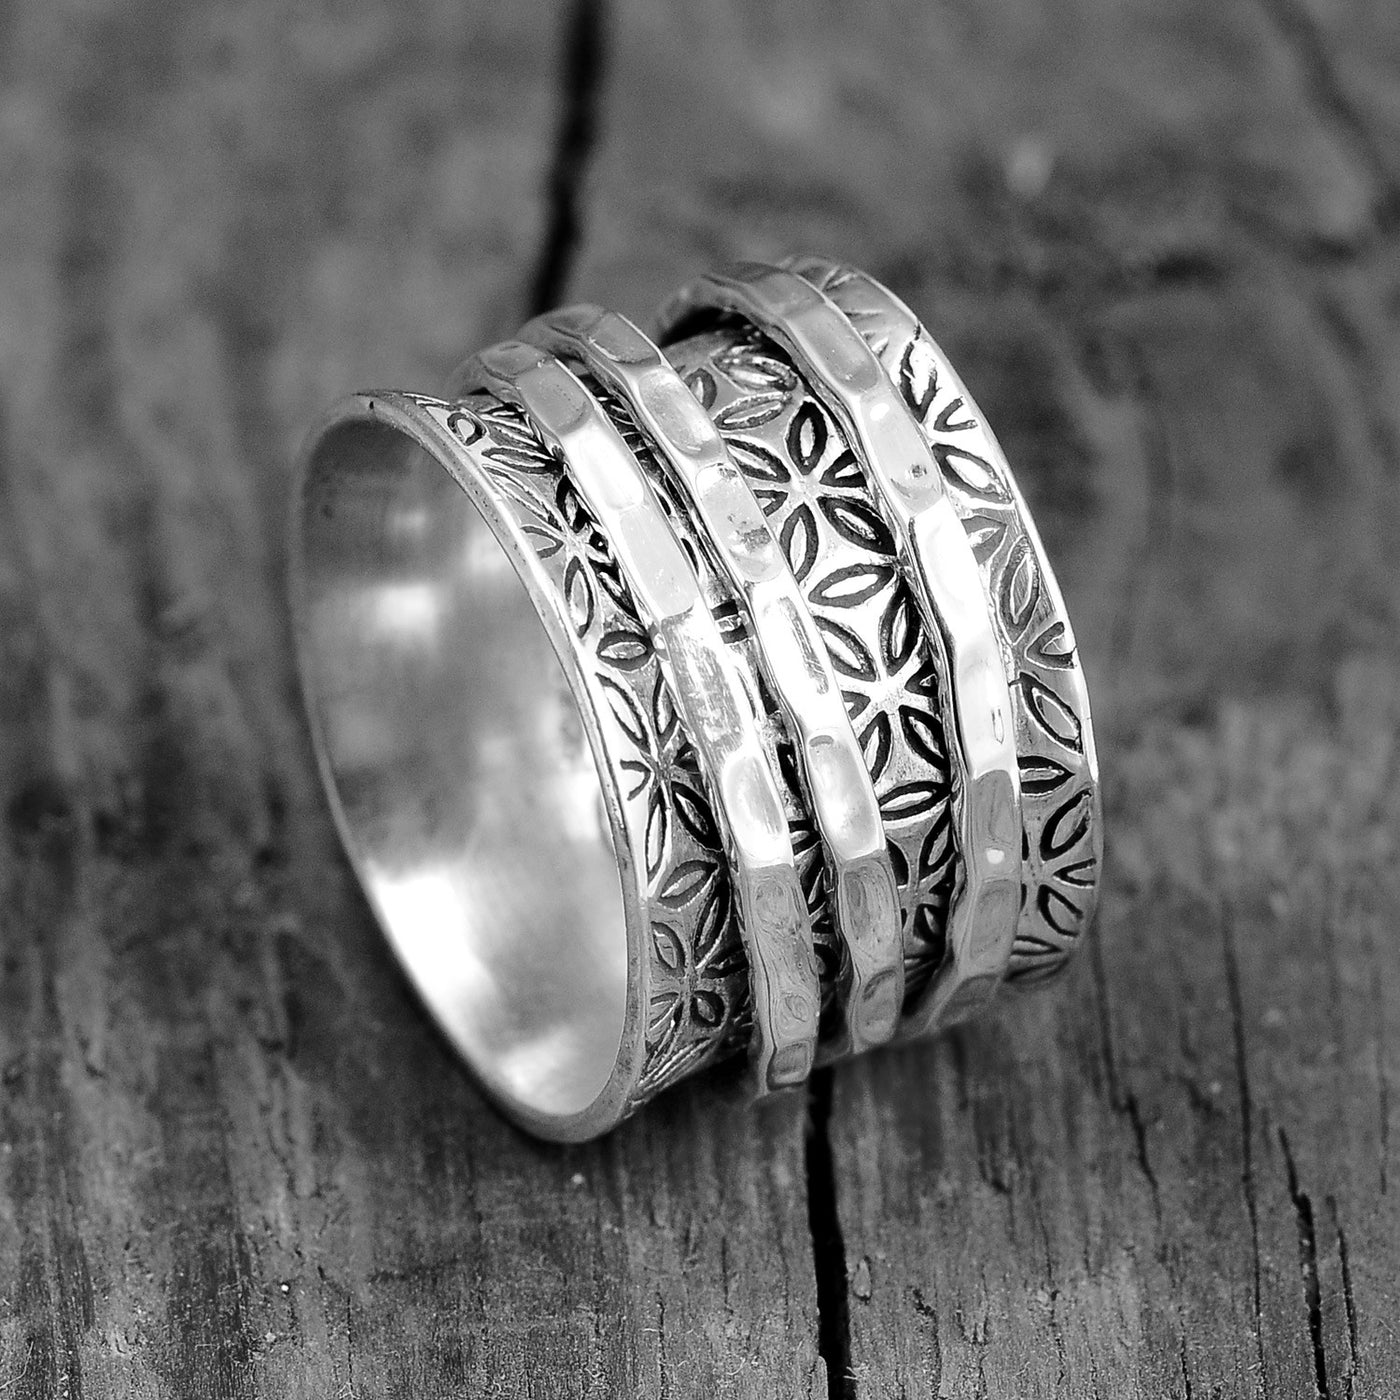 Sterling Silver Flower of Life Spinner Ring